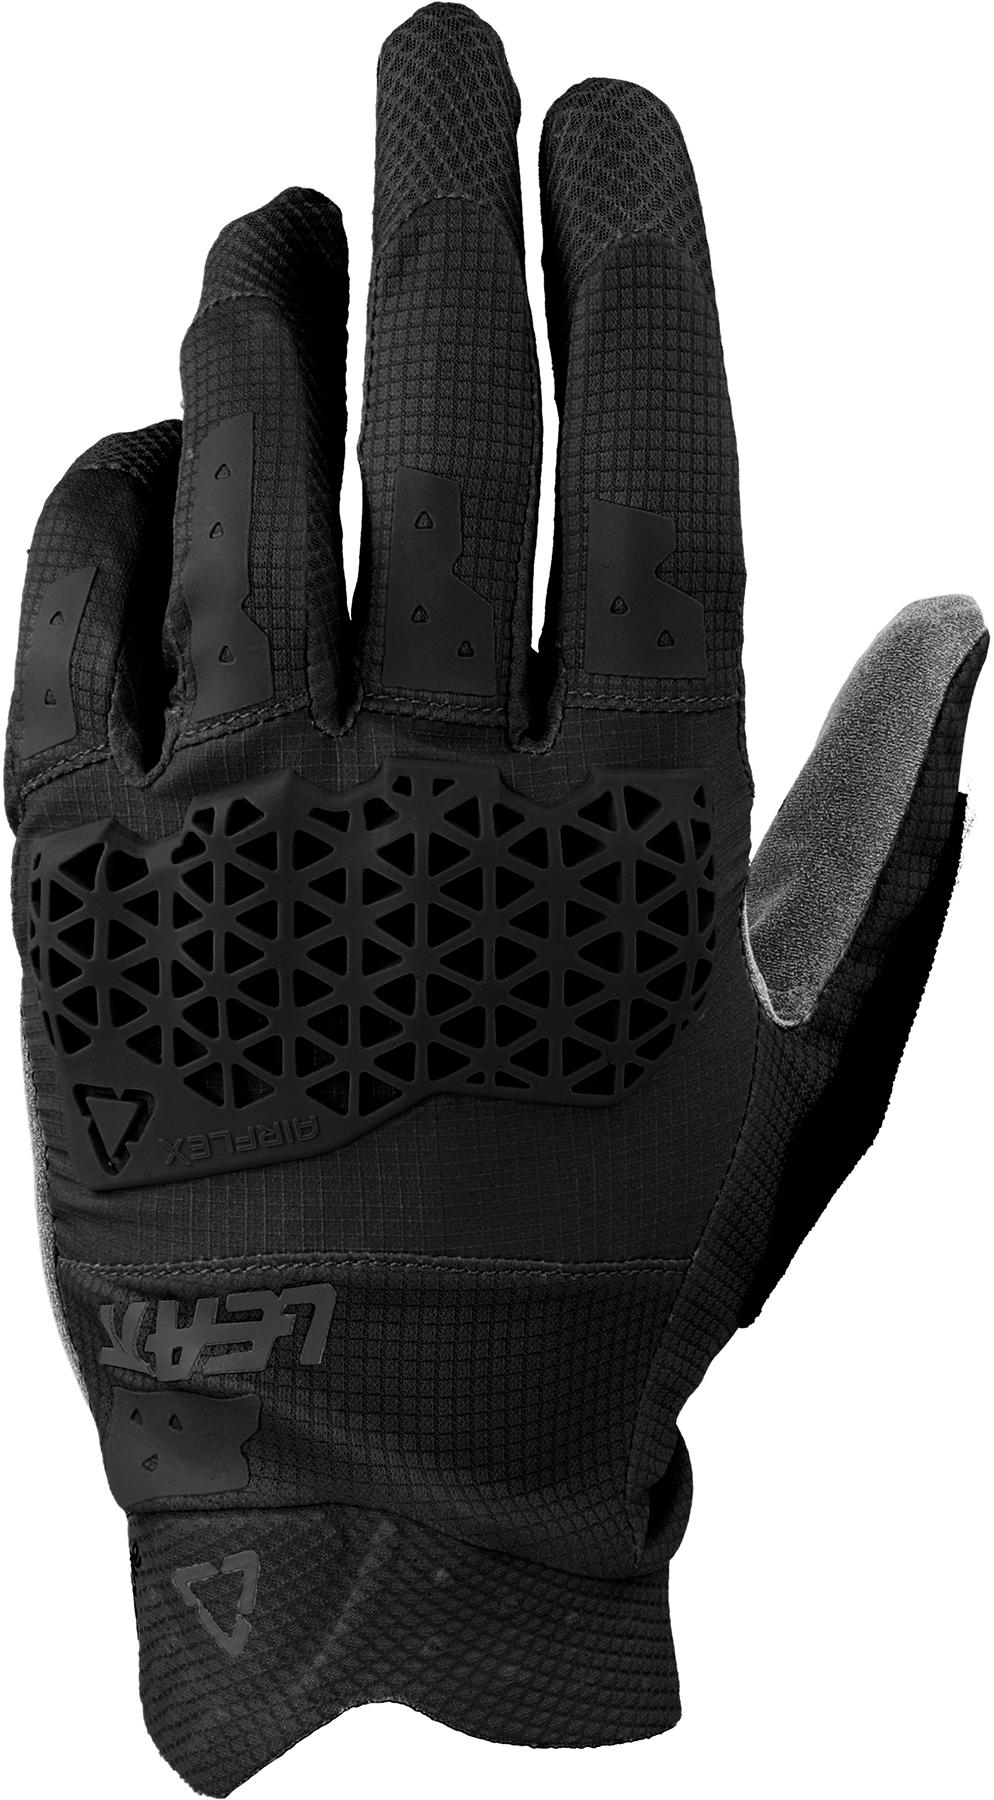 Leatt Mtb 3.0 Lite Gloves - Black